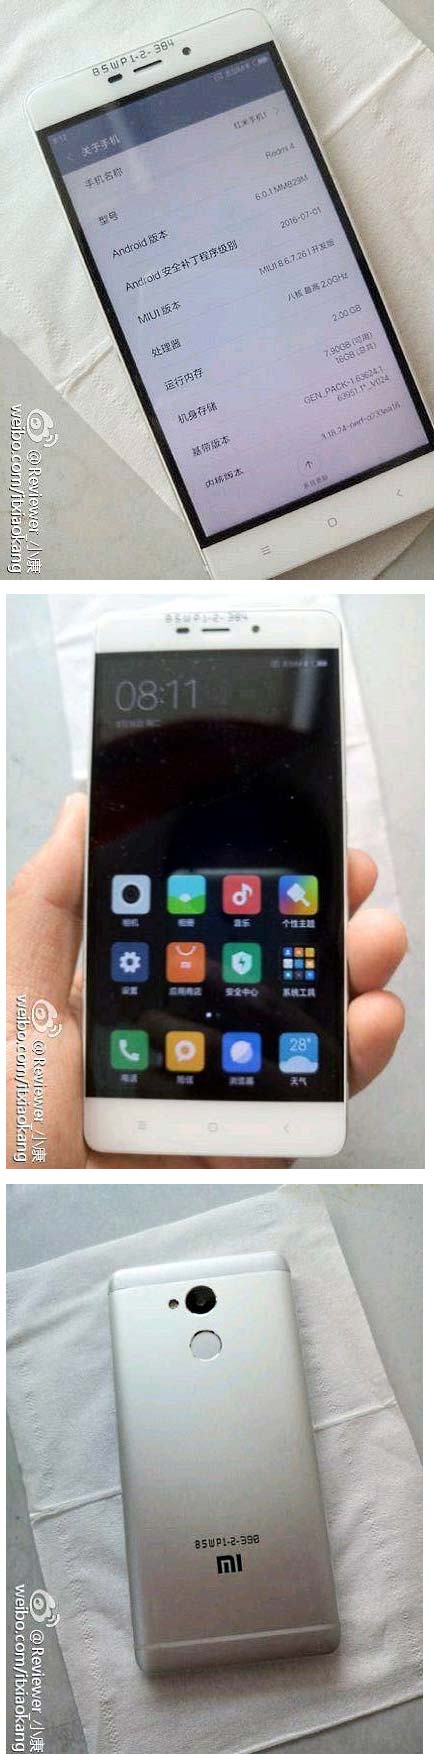 Живые фото Xiaomi Redmi 4